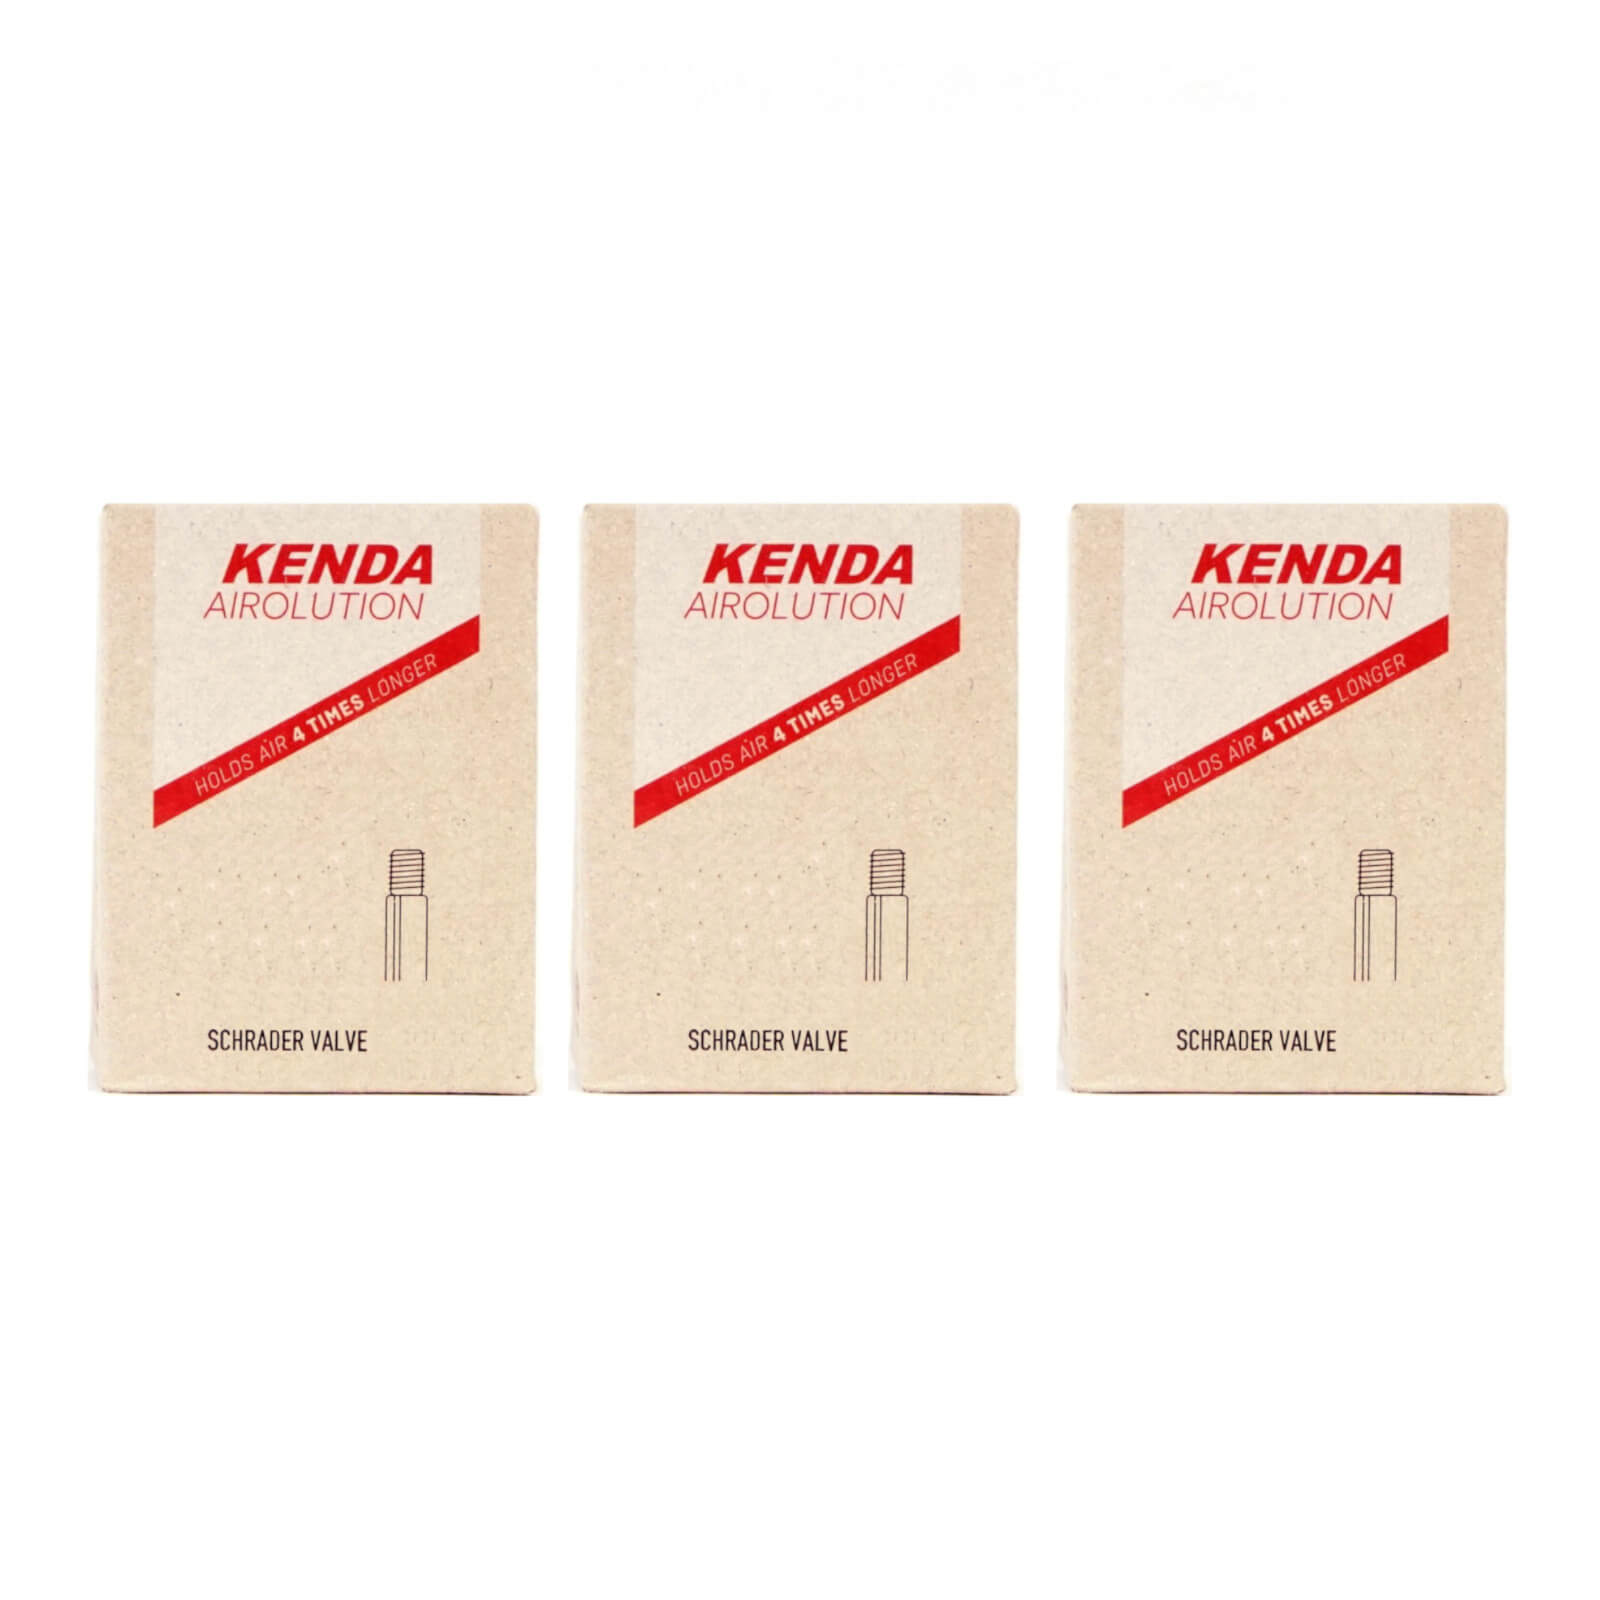 Kenda Airolution 12x1.75-2.25" 12 Inch Schrader Valve Bike Inner Tube Pack of 3